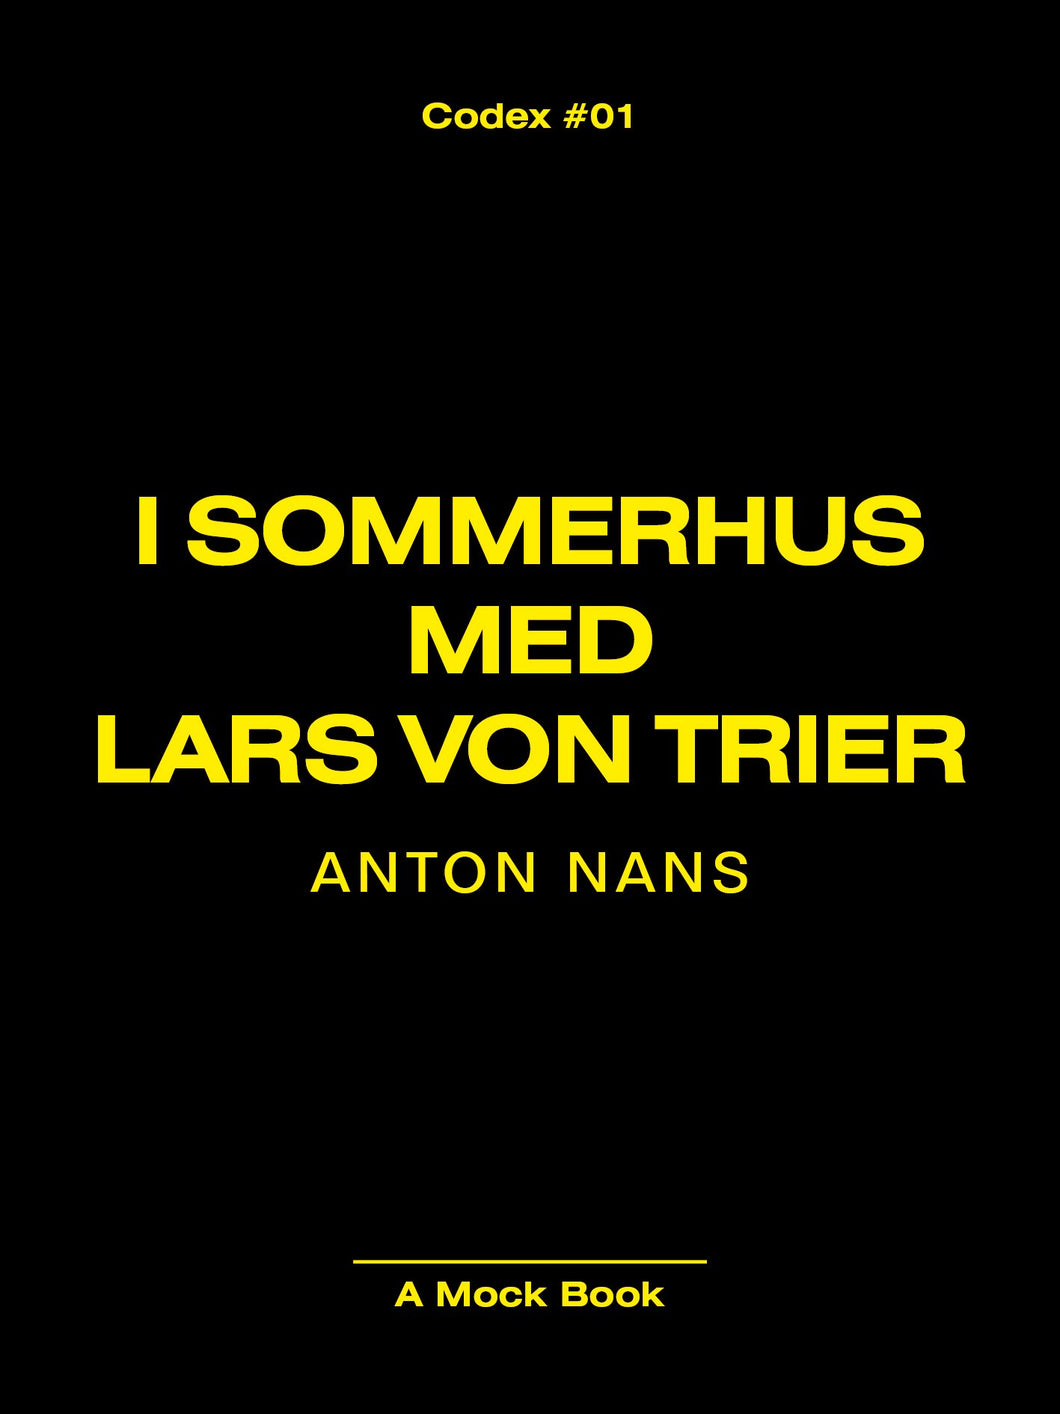 Anton Nans: I SOMMERHUS MED LARS VON TRIER